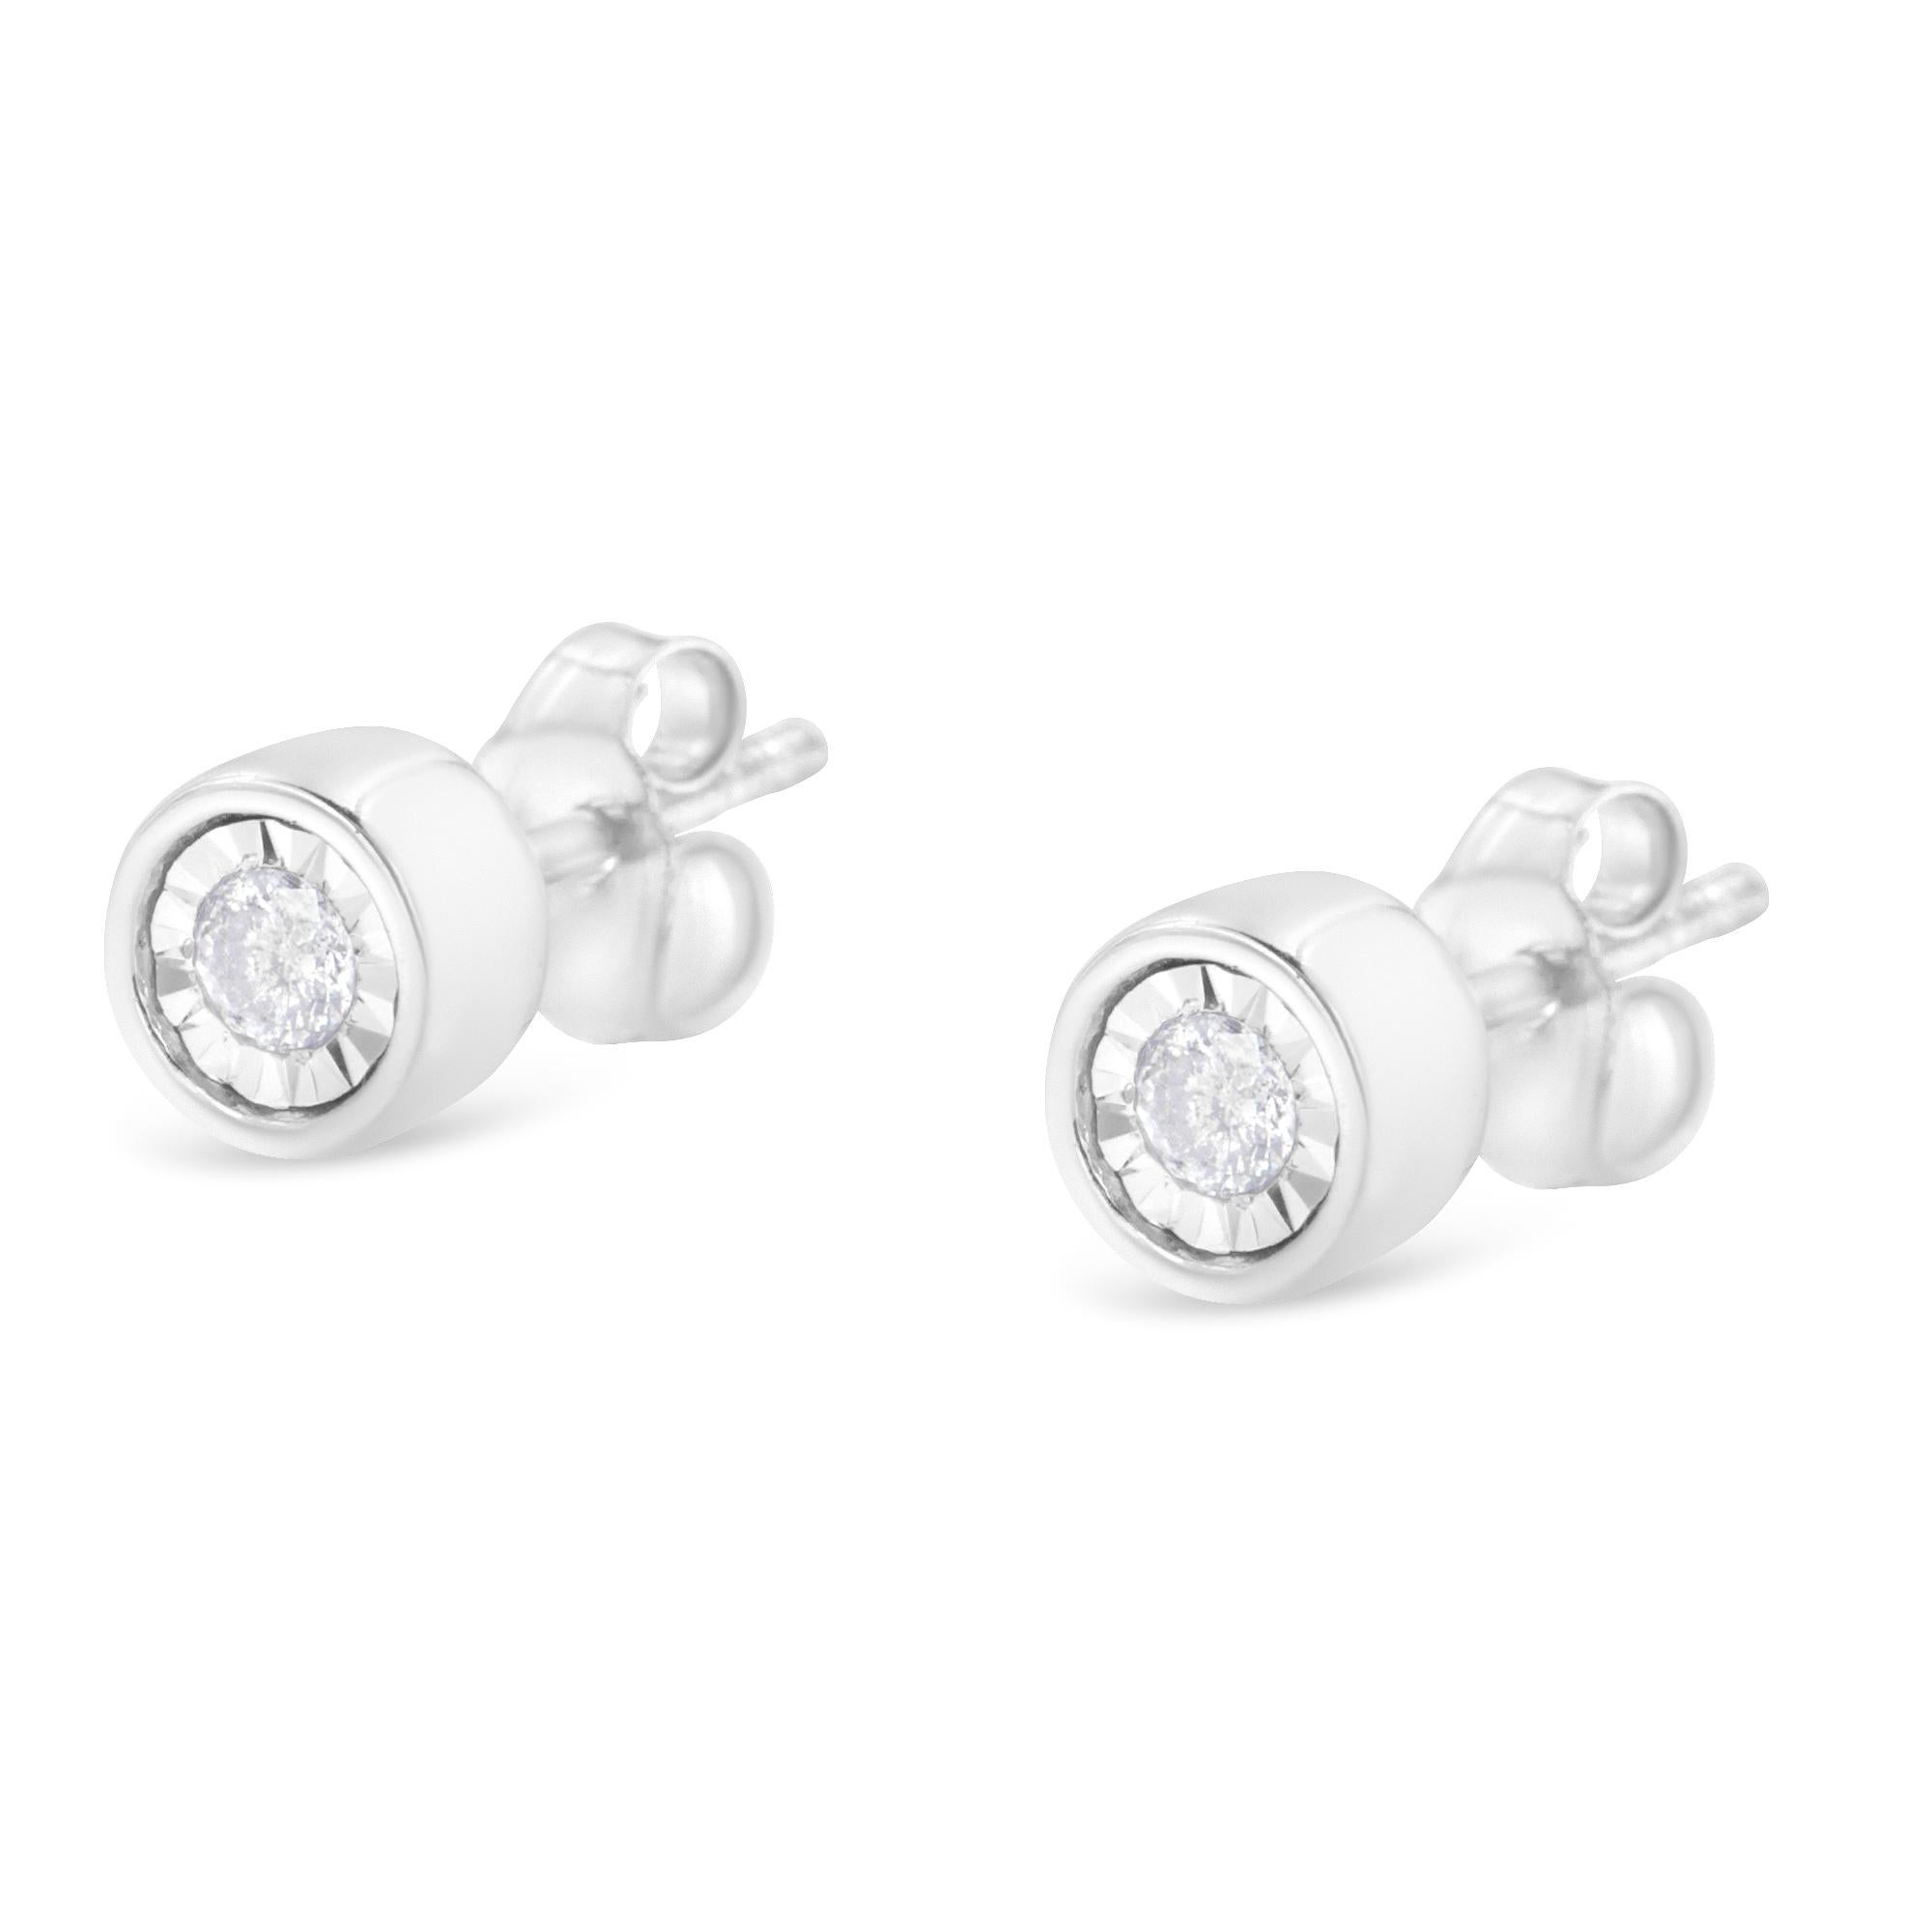 1 carat bezel set diamond earrings